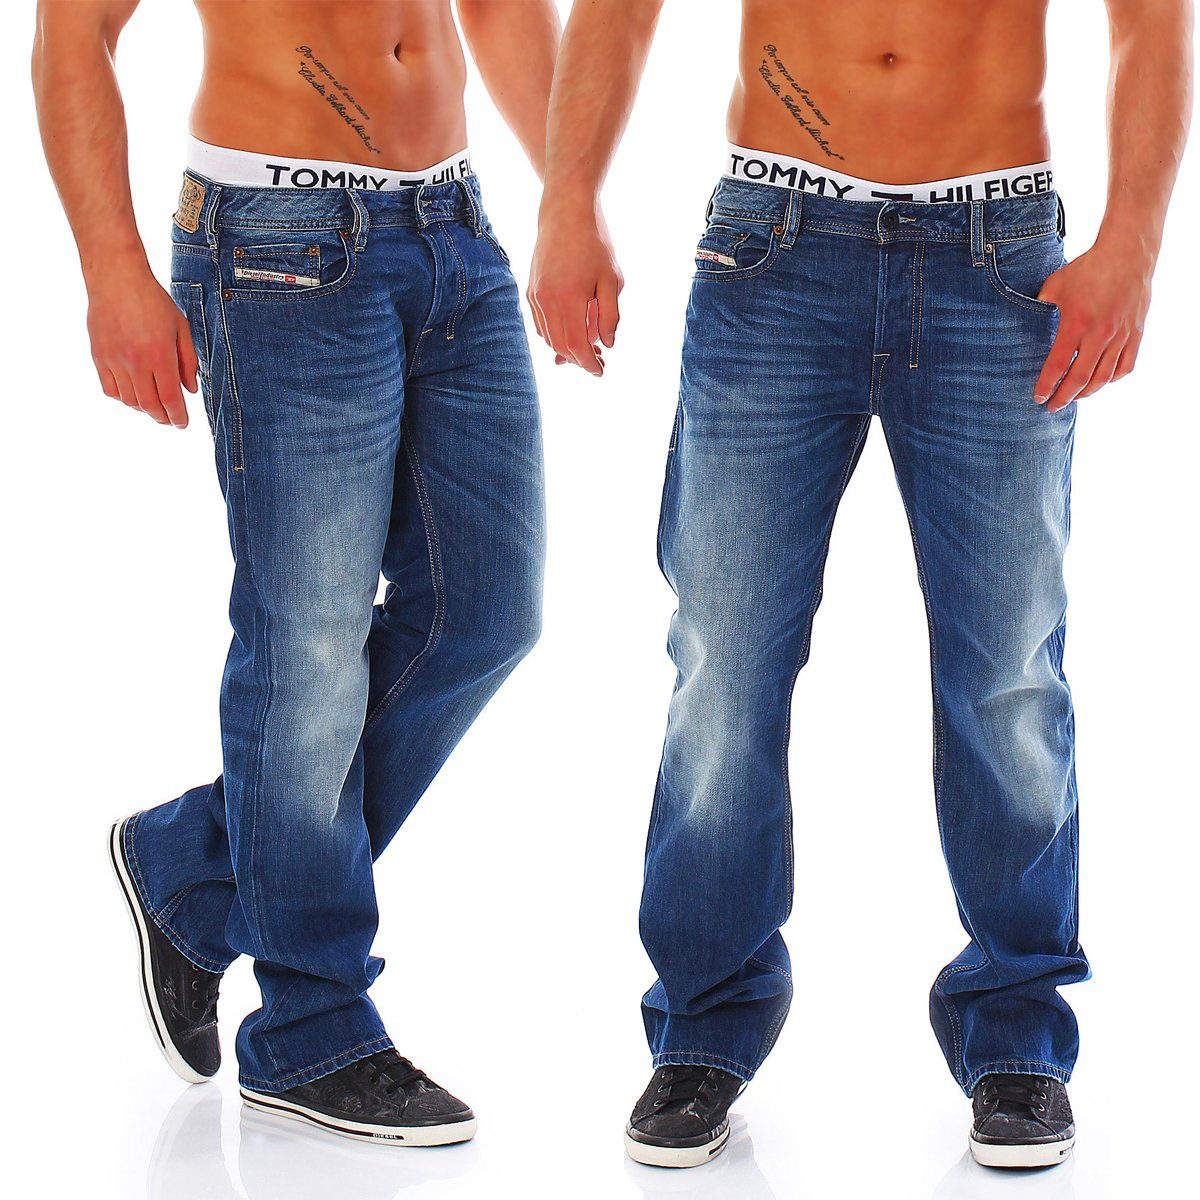 Diesel Herren Jeans online kaufen | OTTO